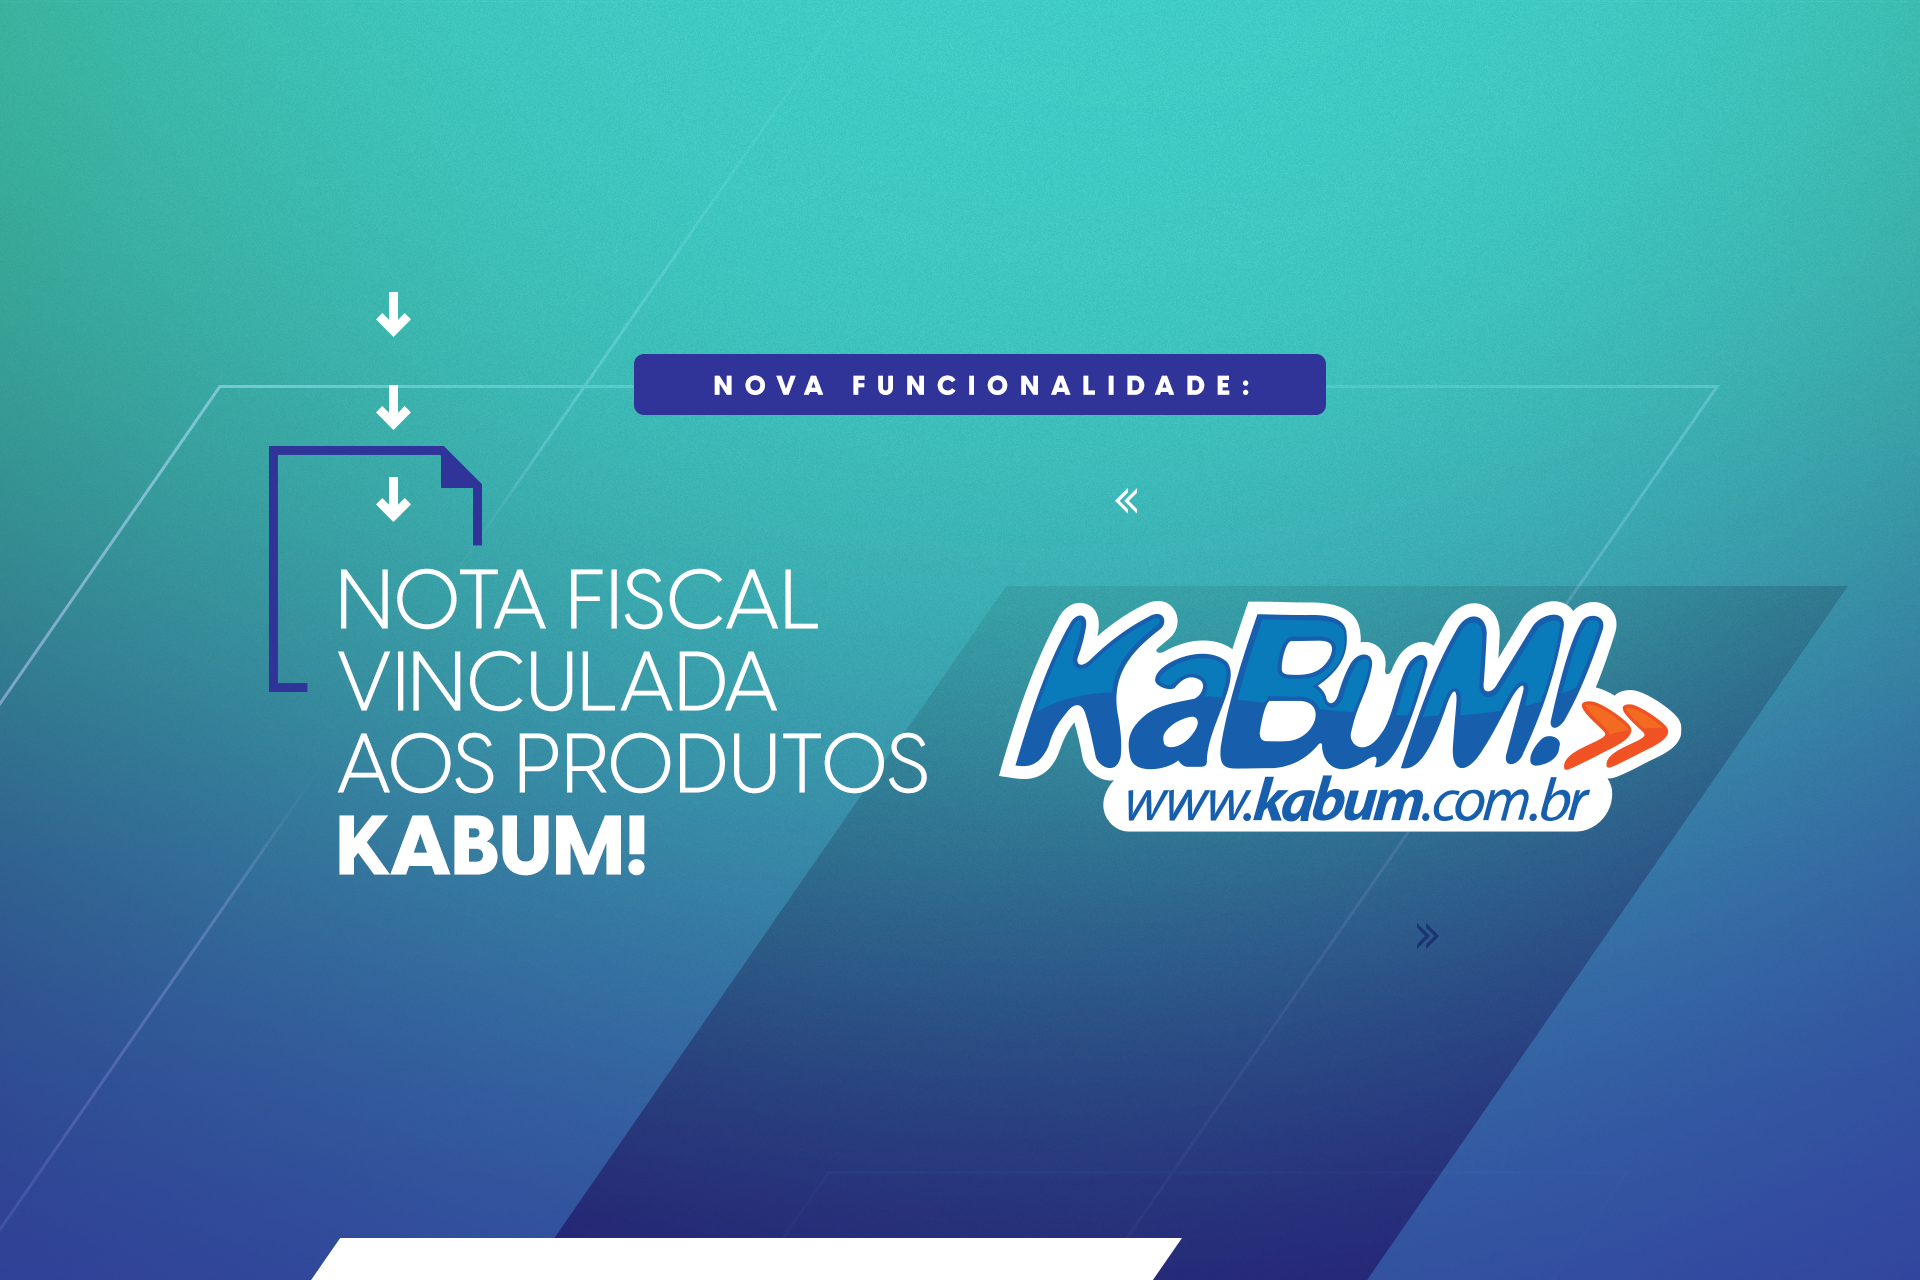 Imagem com a frase "nota fiscal vinculada aos produtos KaBum!", com a logo da marca.